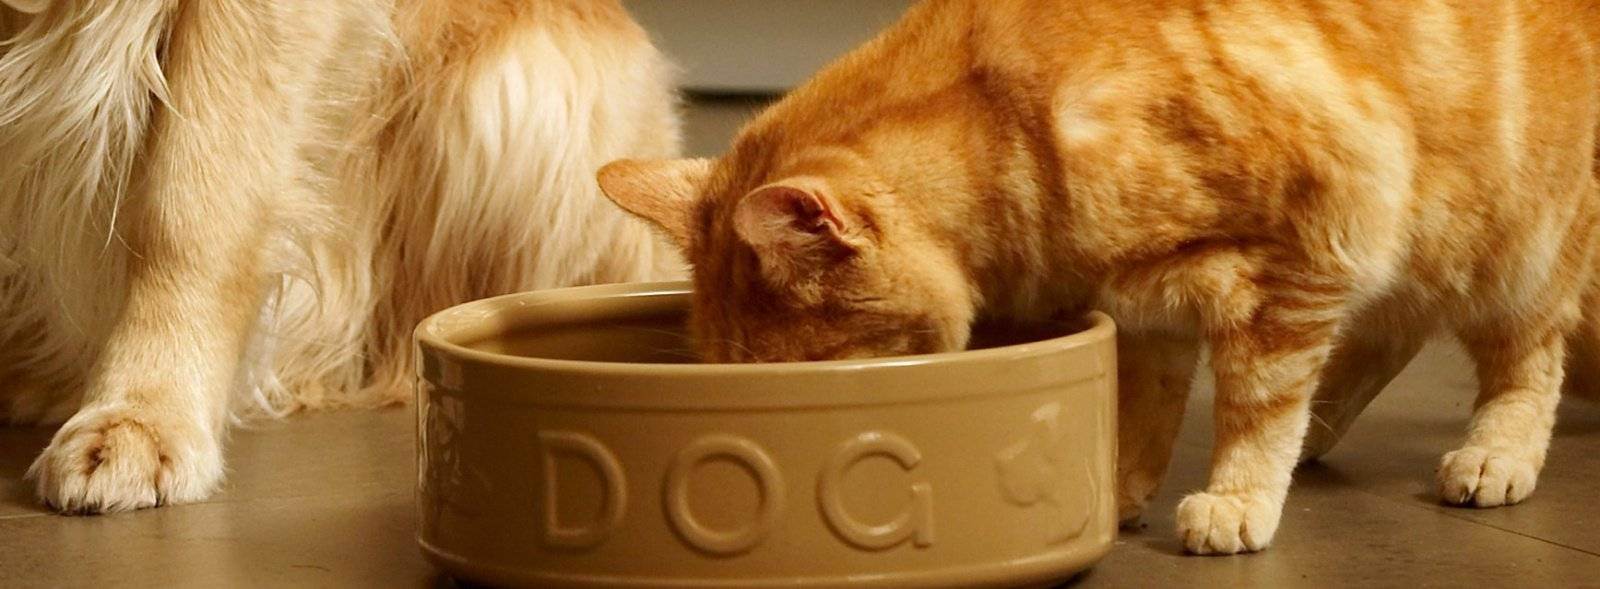 У кошки пропал аппетит, причины, что делать, профилактика | 
ветеринарная служба владимирской области